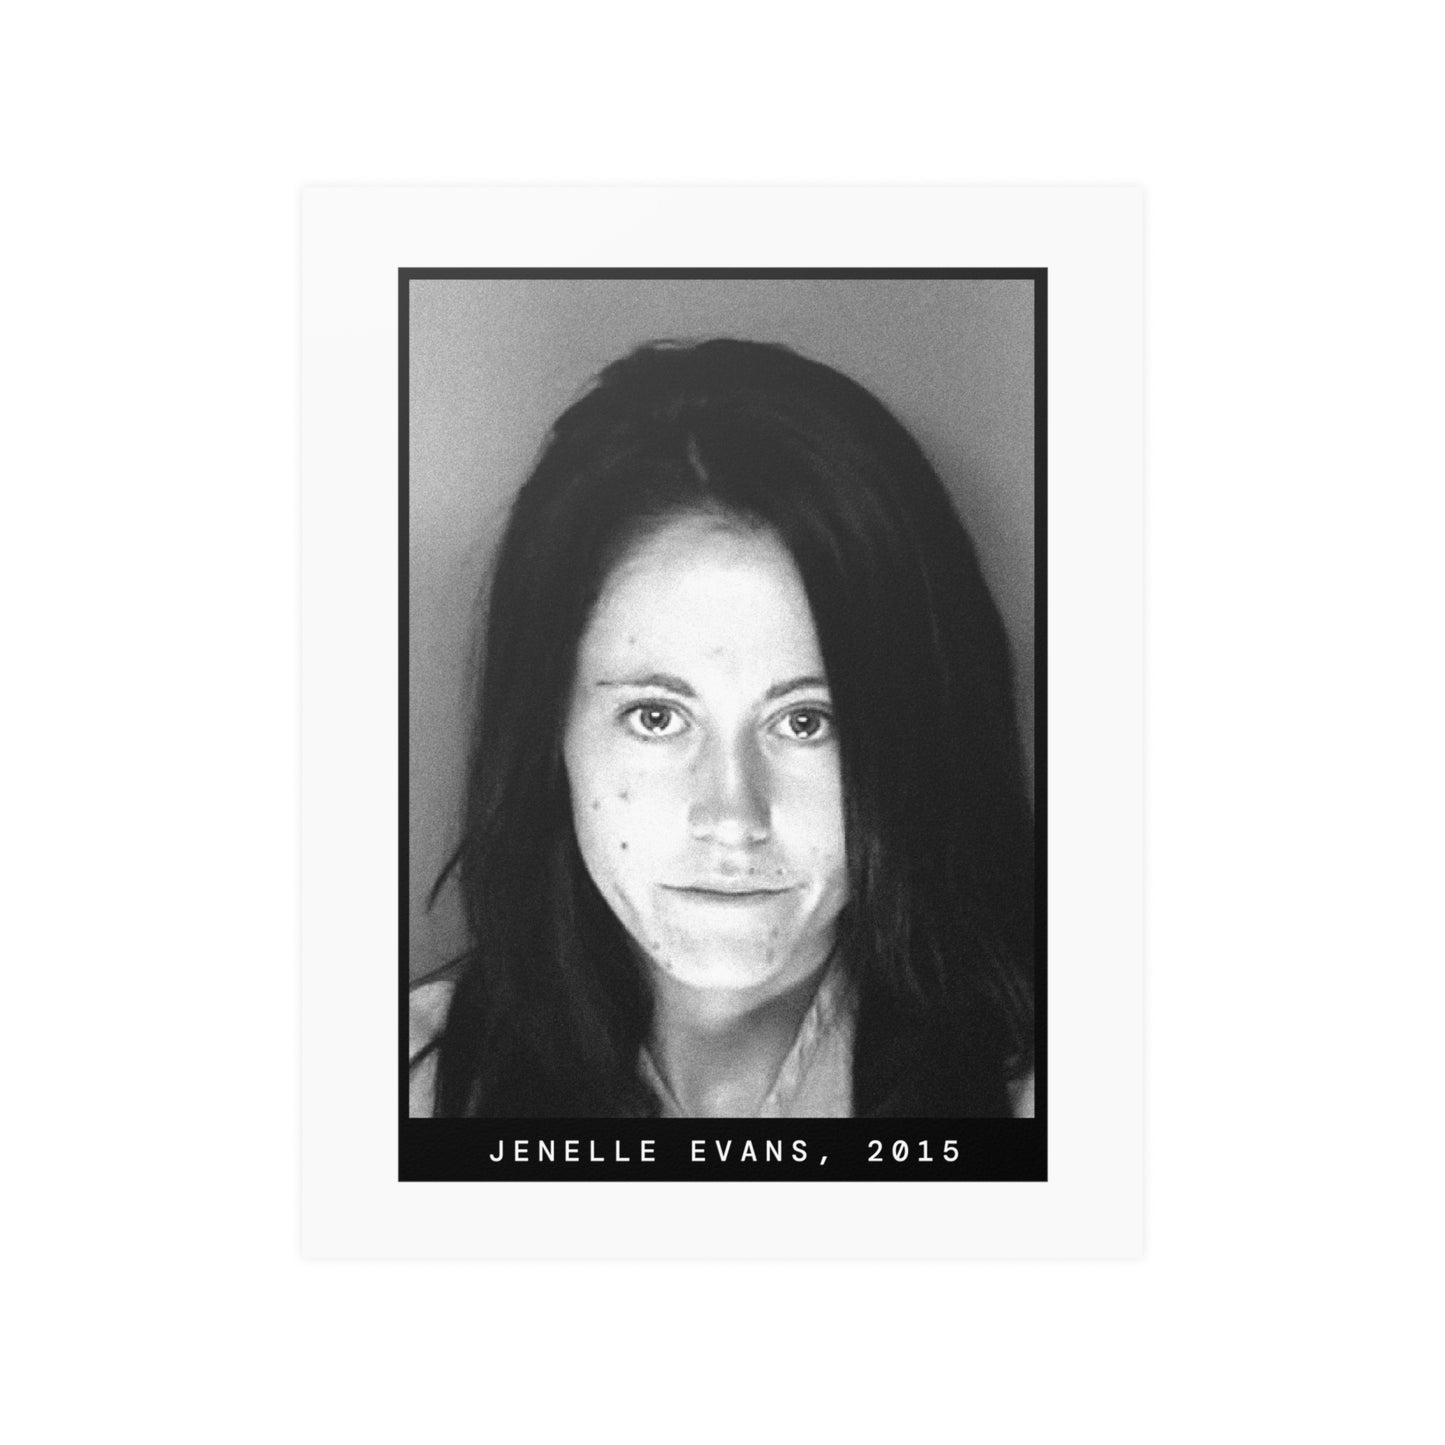 Jenelle Evans, 2015 Celebrity Mugshot Poster